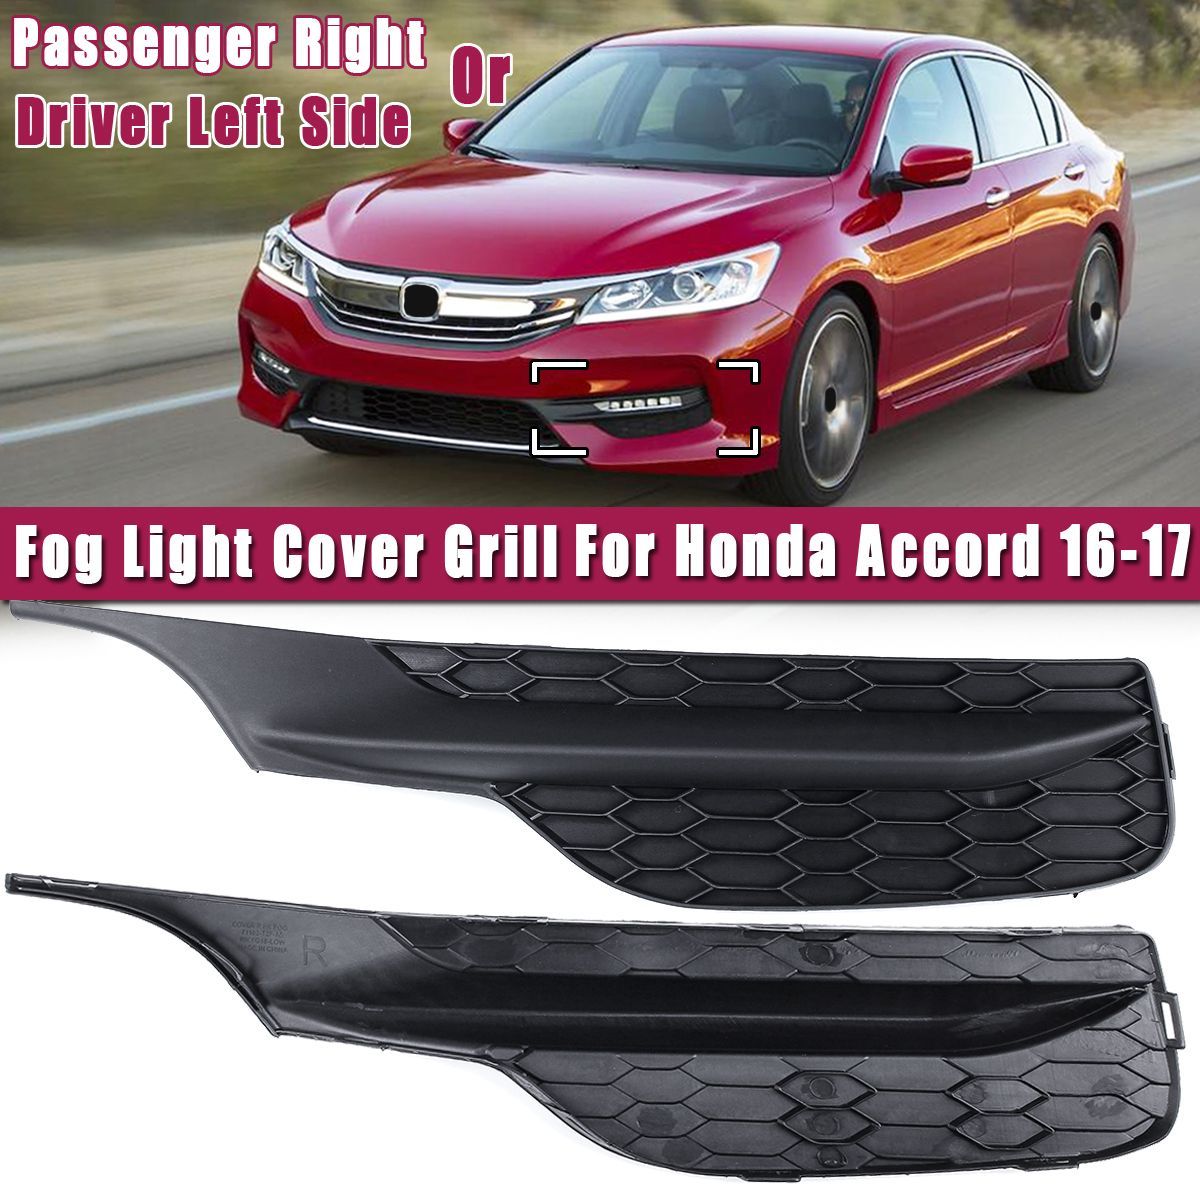 Car-Passenger-Right-Driver-Left-Side-Fog-Light-Cover-Grill-For-Honda-Accord-2016-2017-1673149